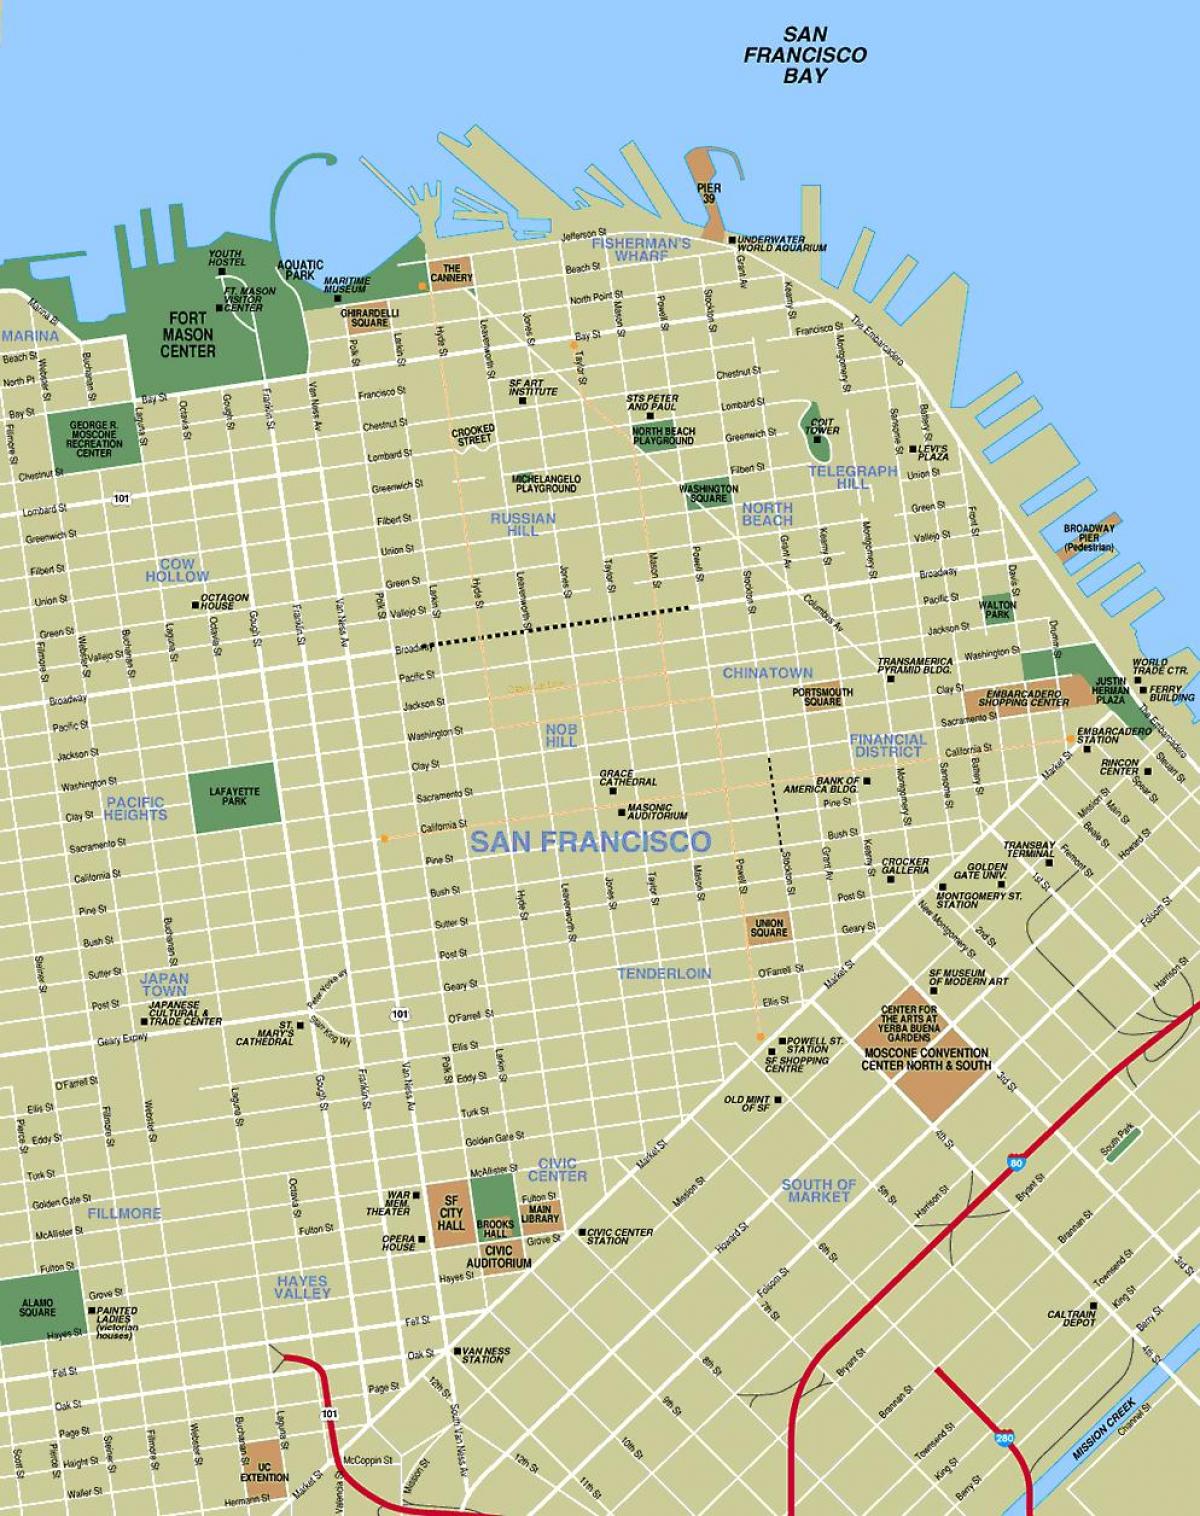 خريطة الفندق في وسط مدينة سان فرانسيسكو كاليفورنيا